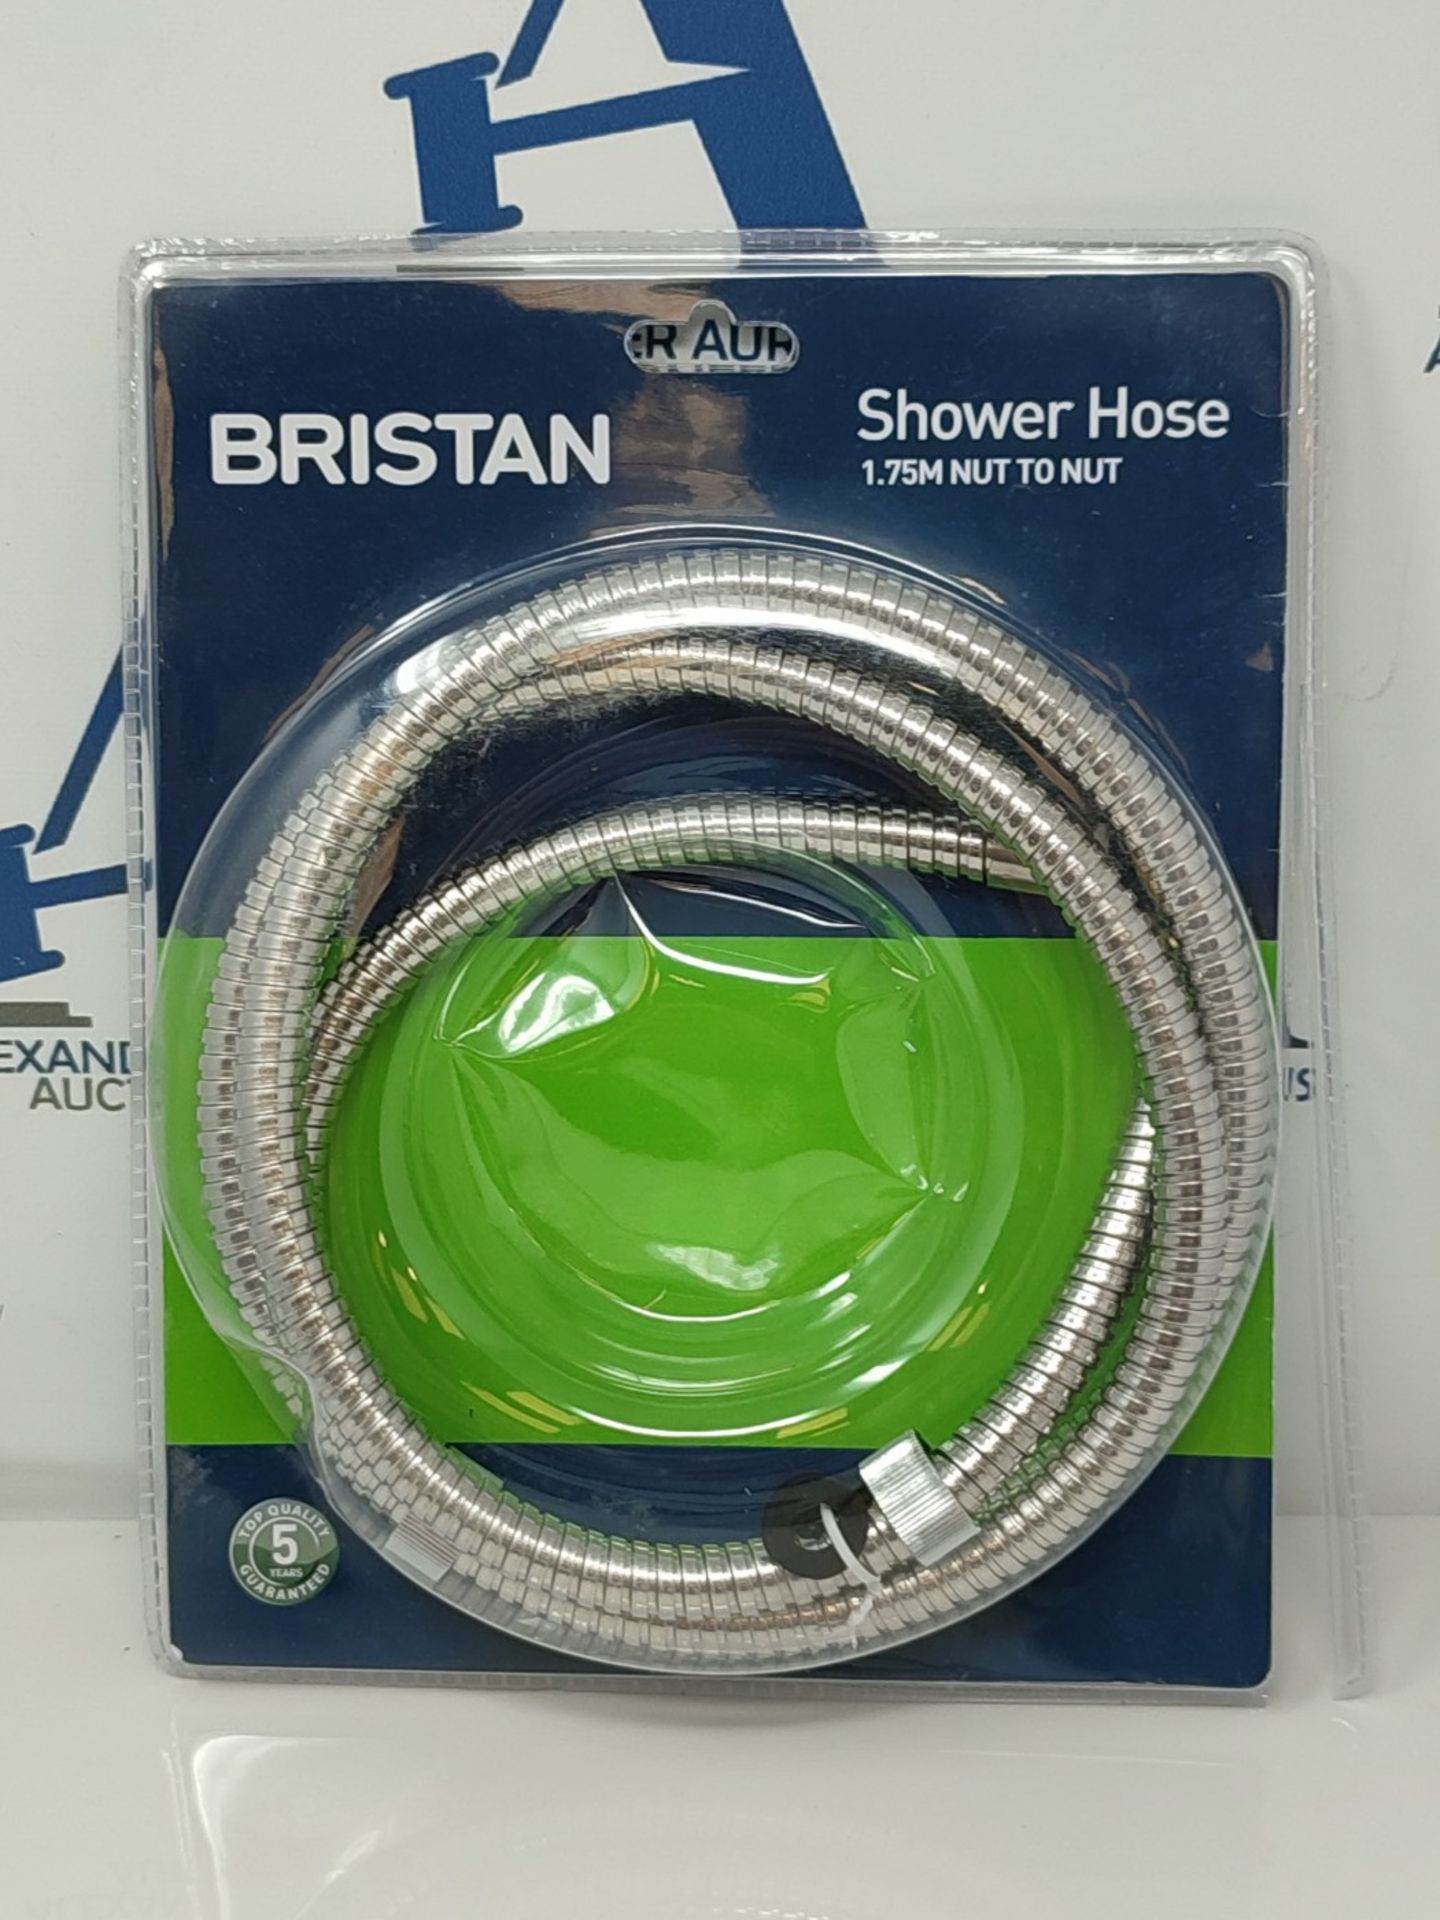 Bristan HOS 175NN01 C 1.75m Nut to Nut Std Bore Shower Hose - Chrome - Image 2 of 3